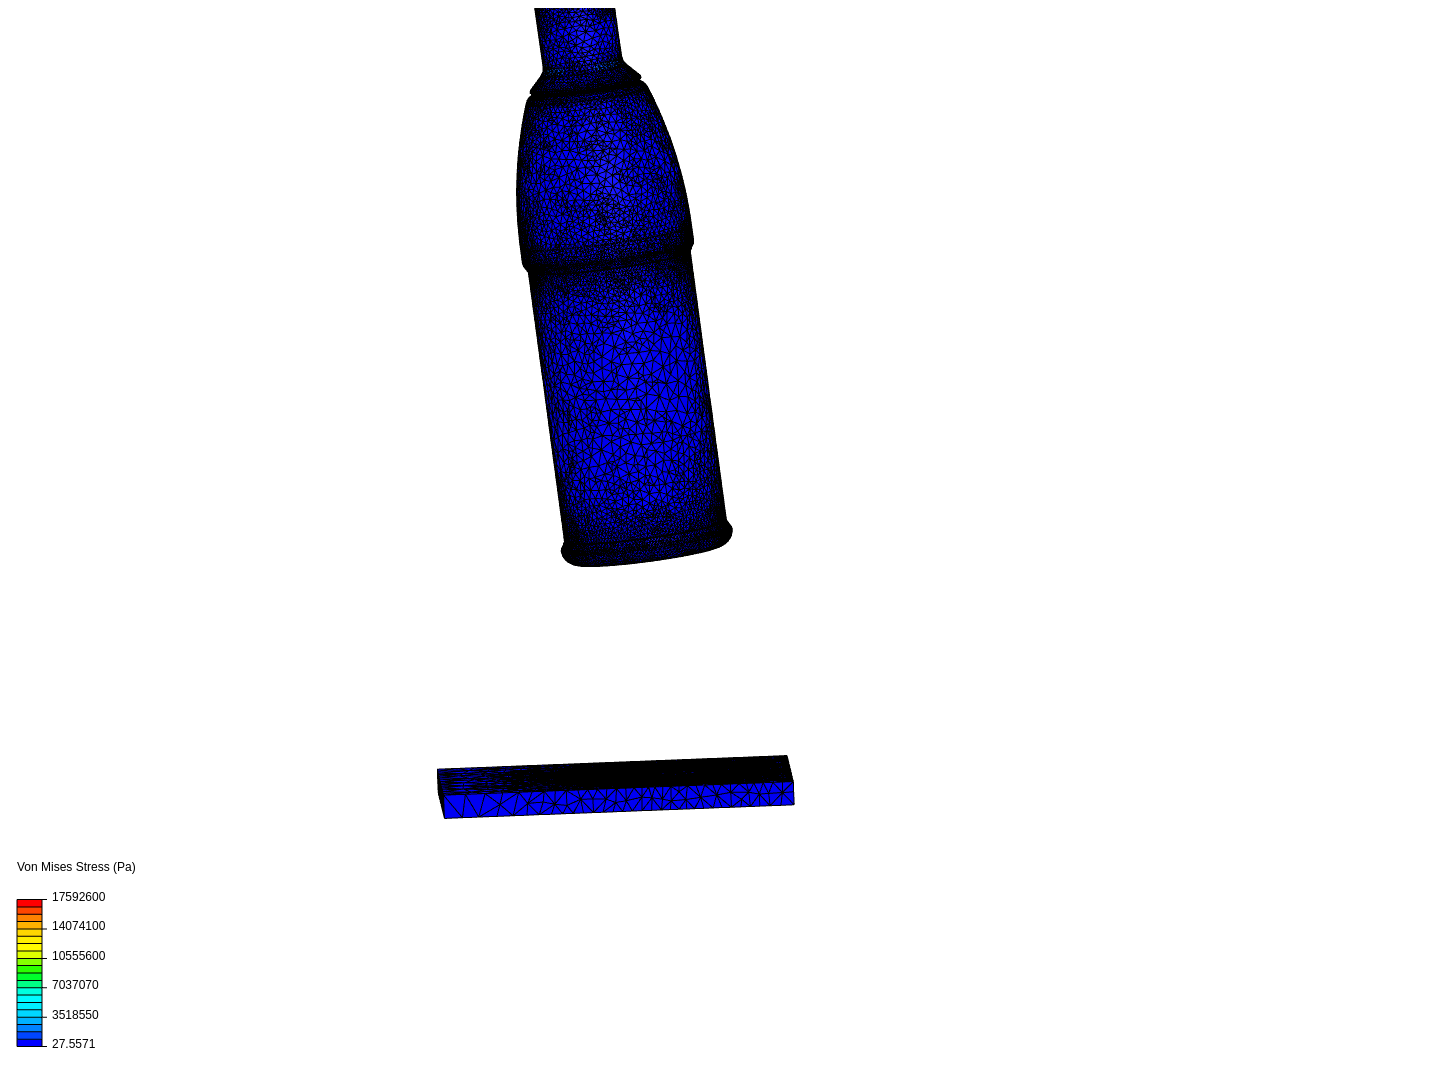 S bottle drop test image